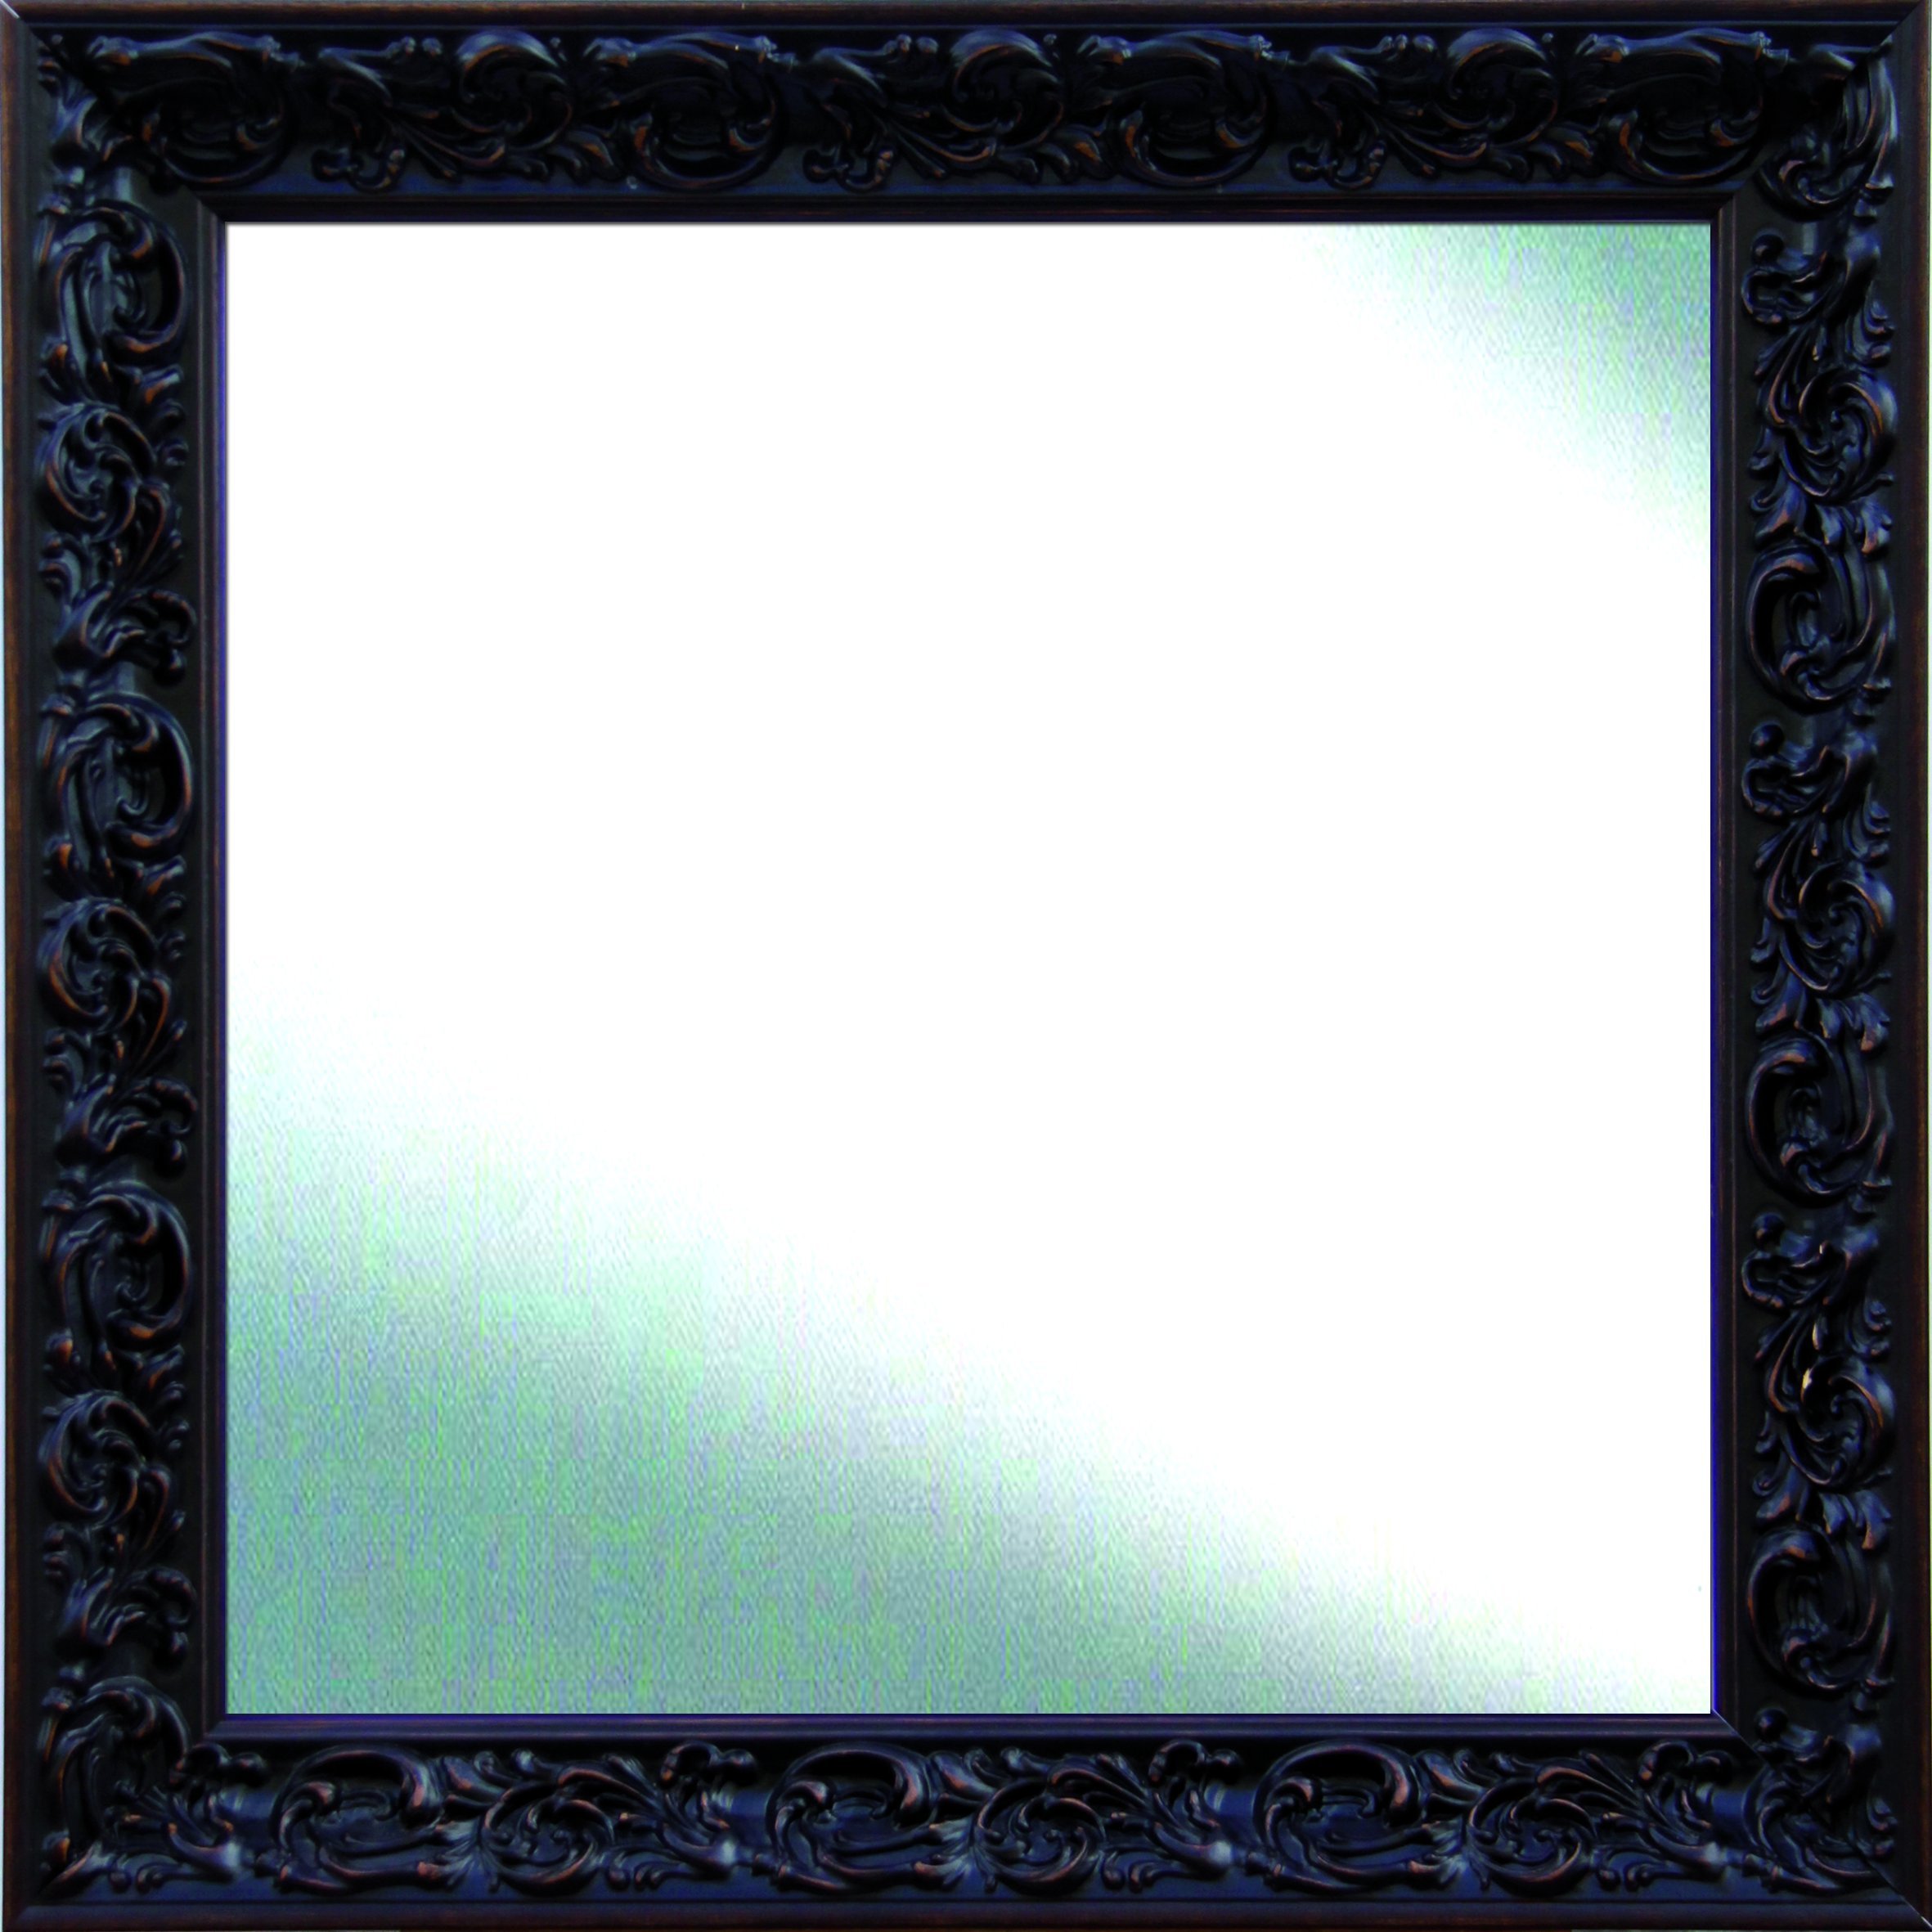 Leinwände Levante DA2091 – 7 – Spiegel Bad/Flur, Dekoration 113 x 73 cm, braun (Walnuss rozada)